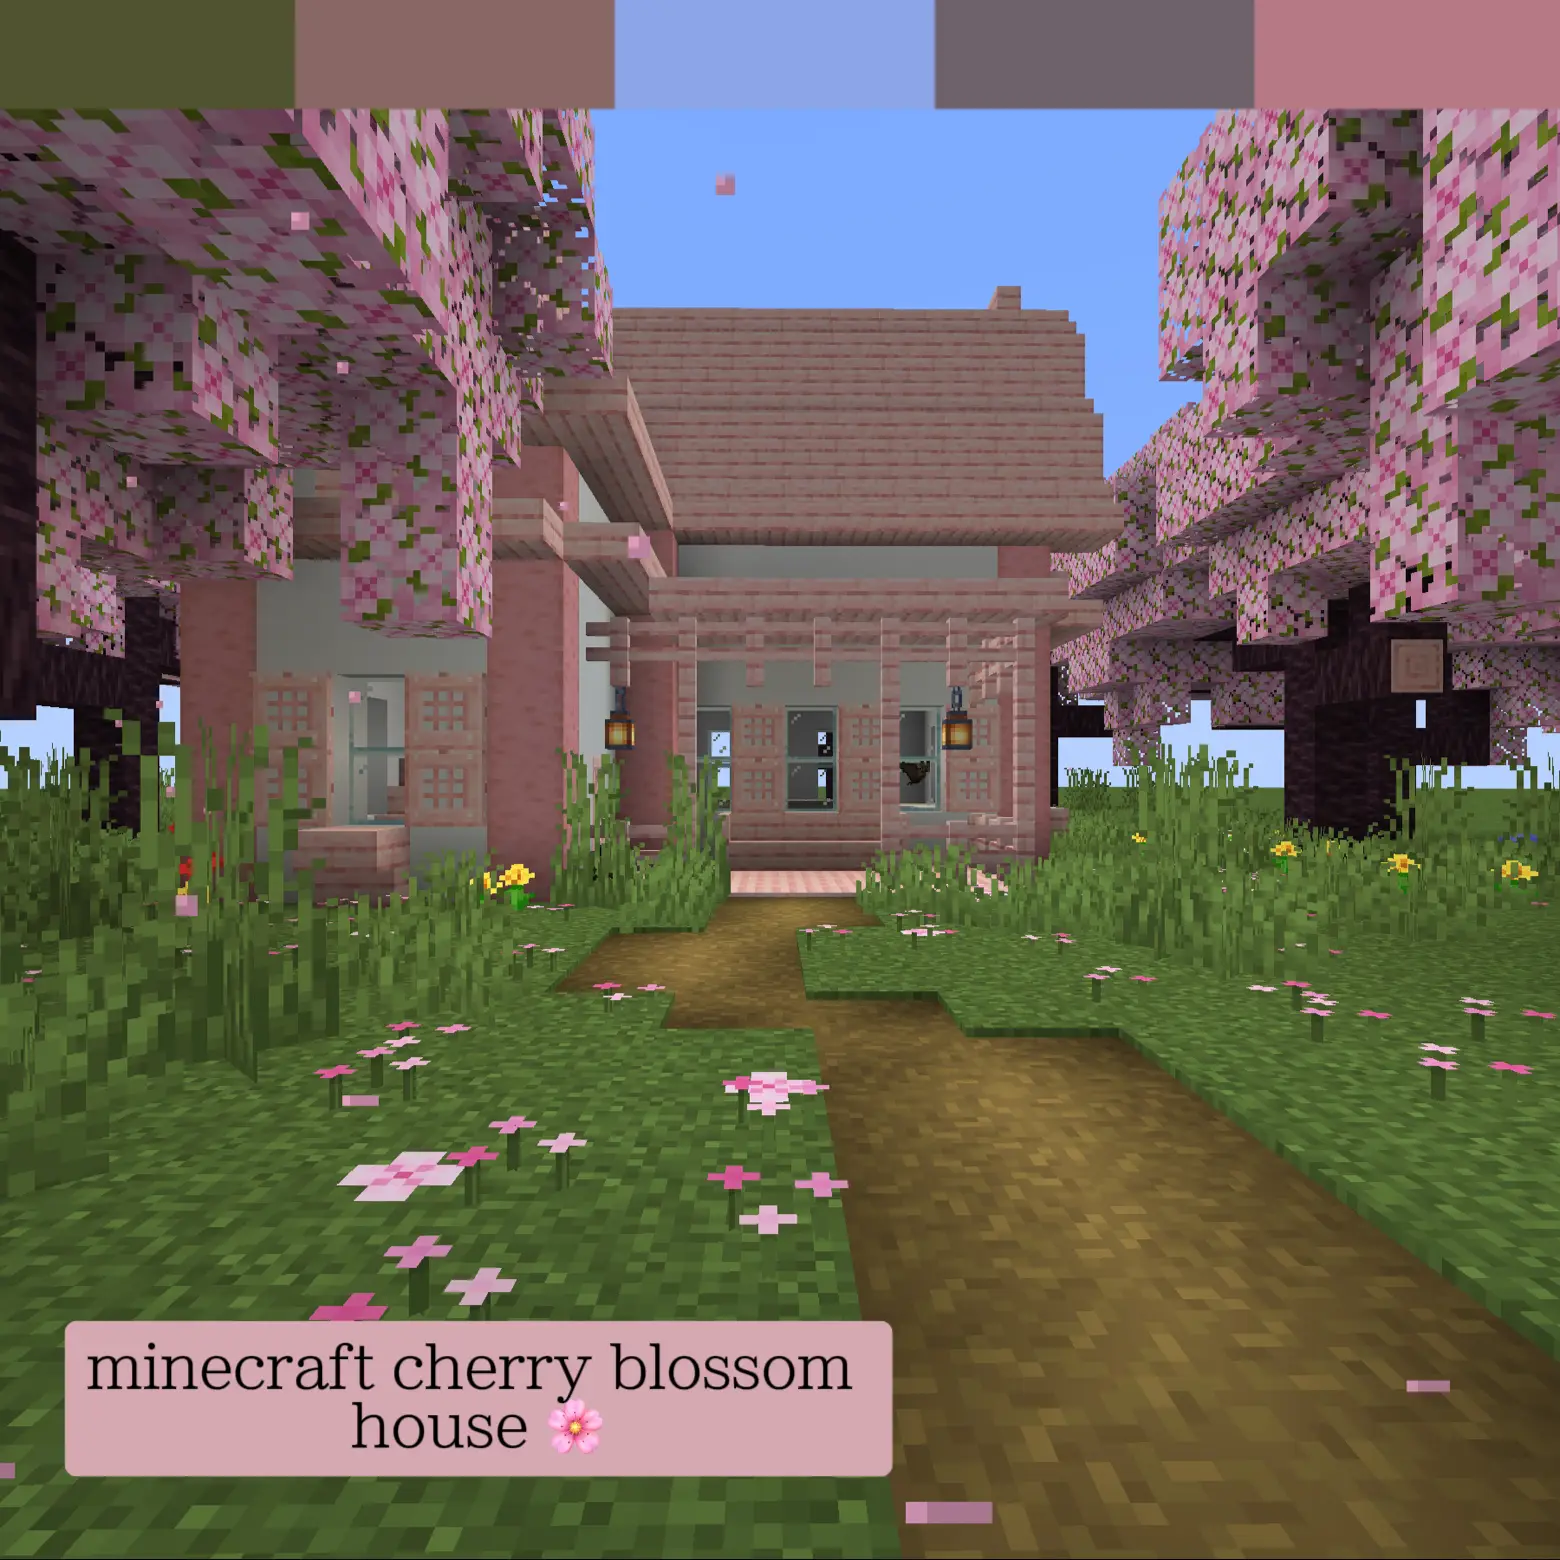 10 Best Pink Minecraft House Ideas